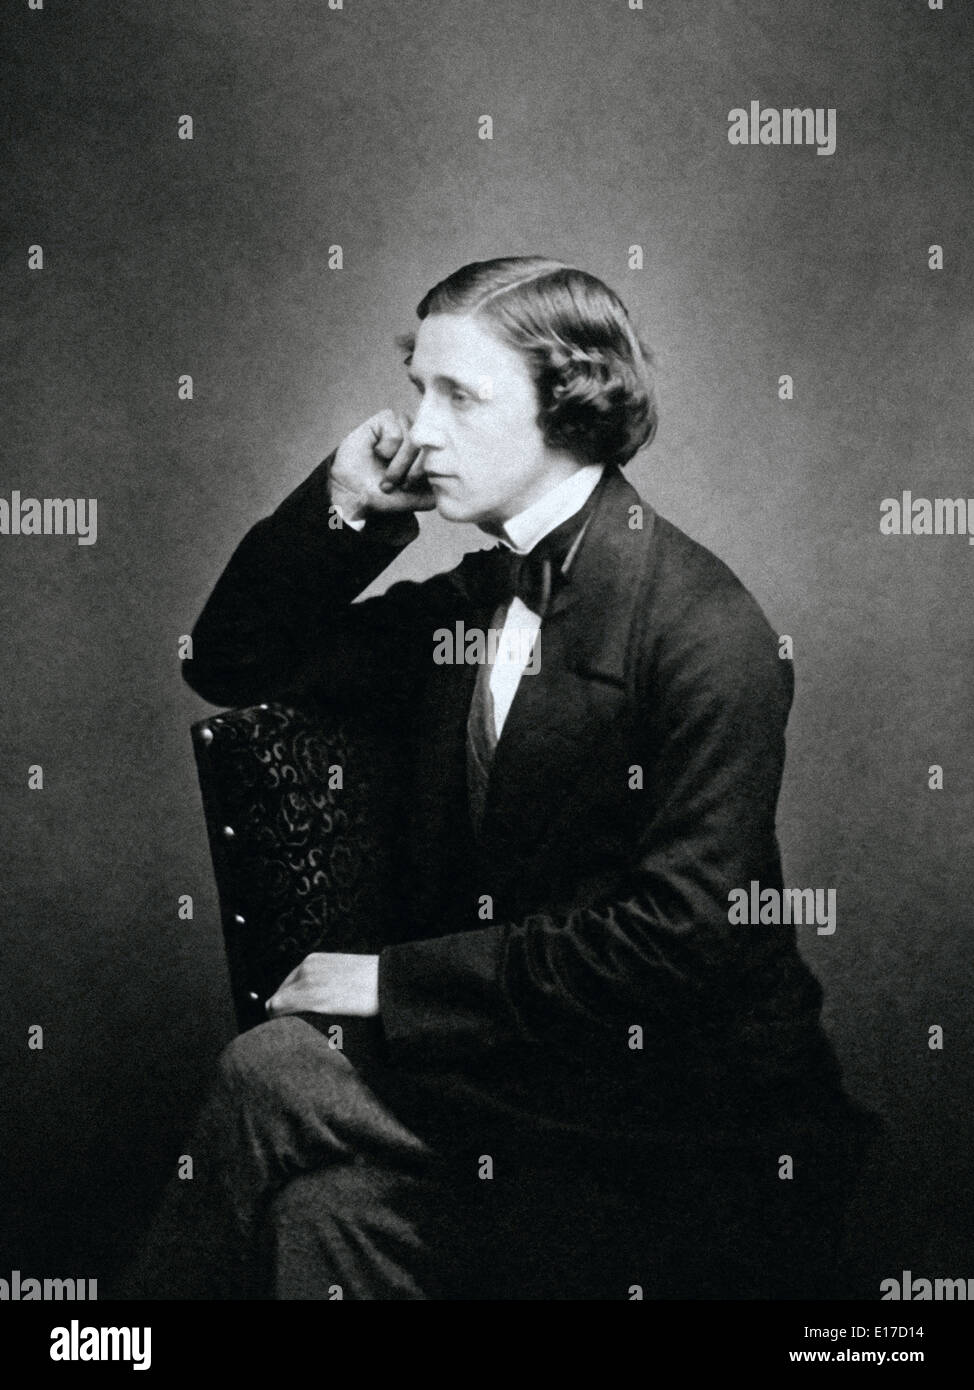 Lewis Carroll (1832-1898), mathématicien anglais, auteur et photographe. Né Charles Lutwidge Dodgson, il adopte le nom de plume de Lewis Carroll publie Alice's Adventures in Wonderland, en 1865. Banque D'Images